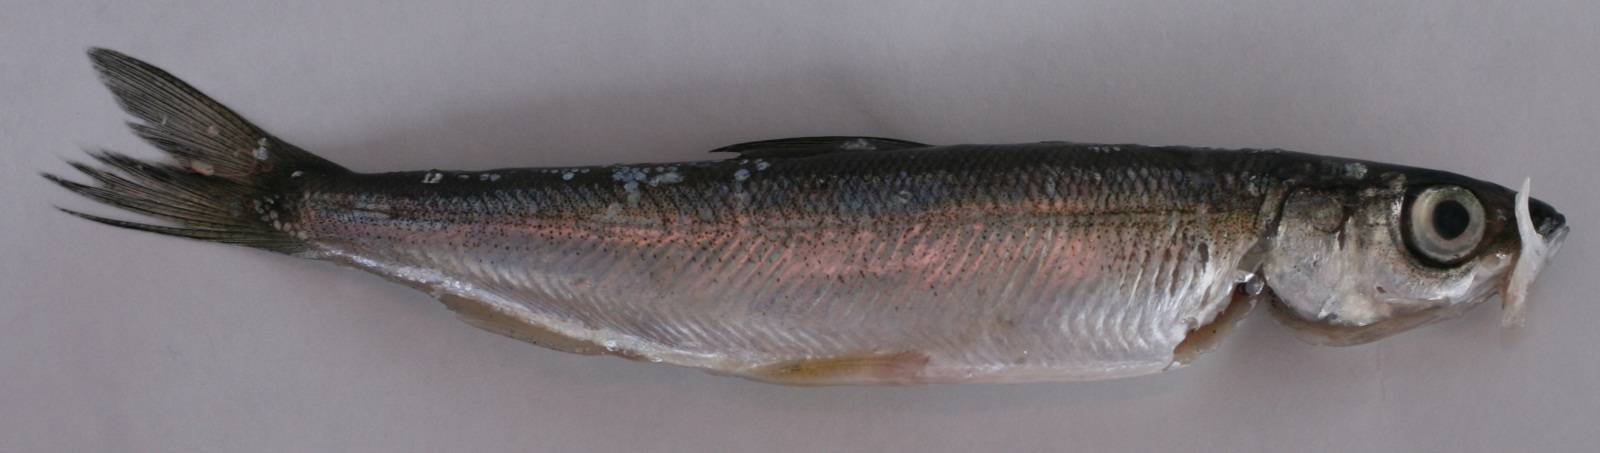 Рыба ряпушка: беломорская, сибирская и другие подвиды